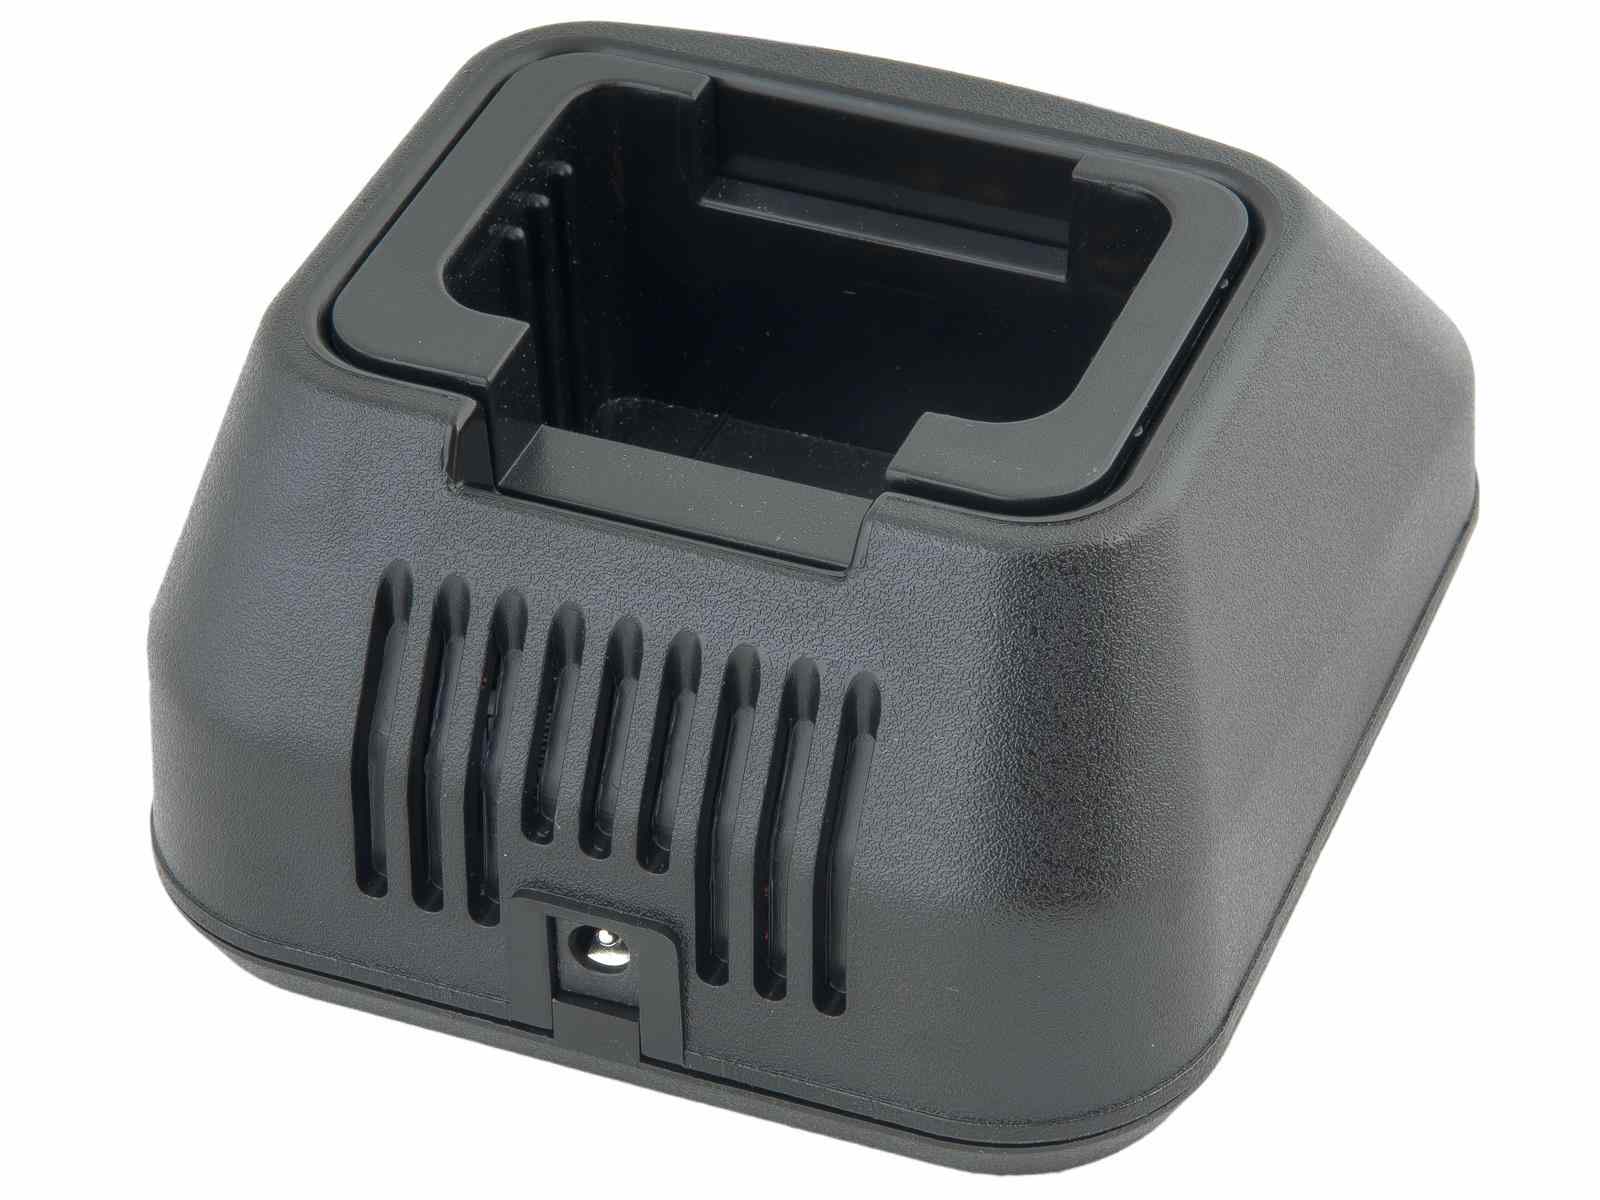 AVACOM nabíječ baterií pro radiostanice Motorola GP900, HT1000, MTX8382 